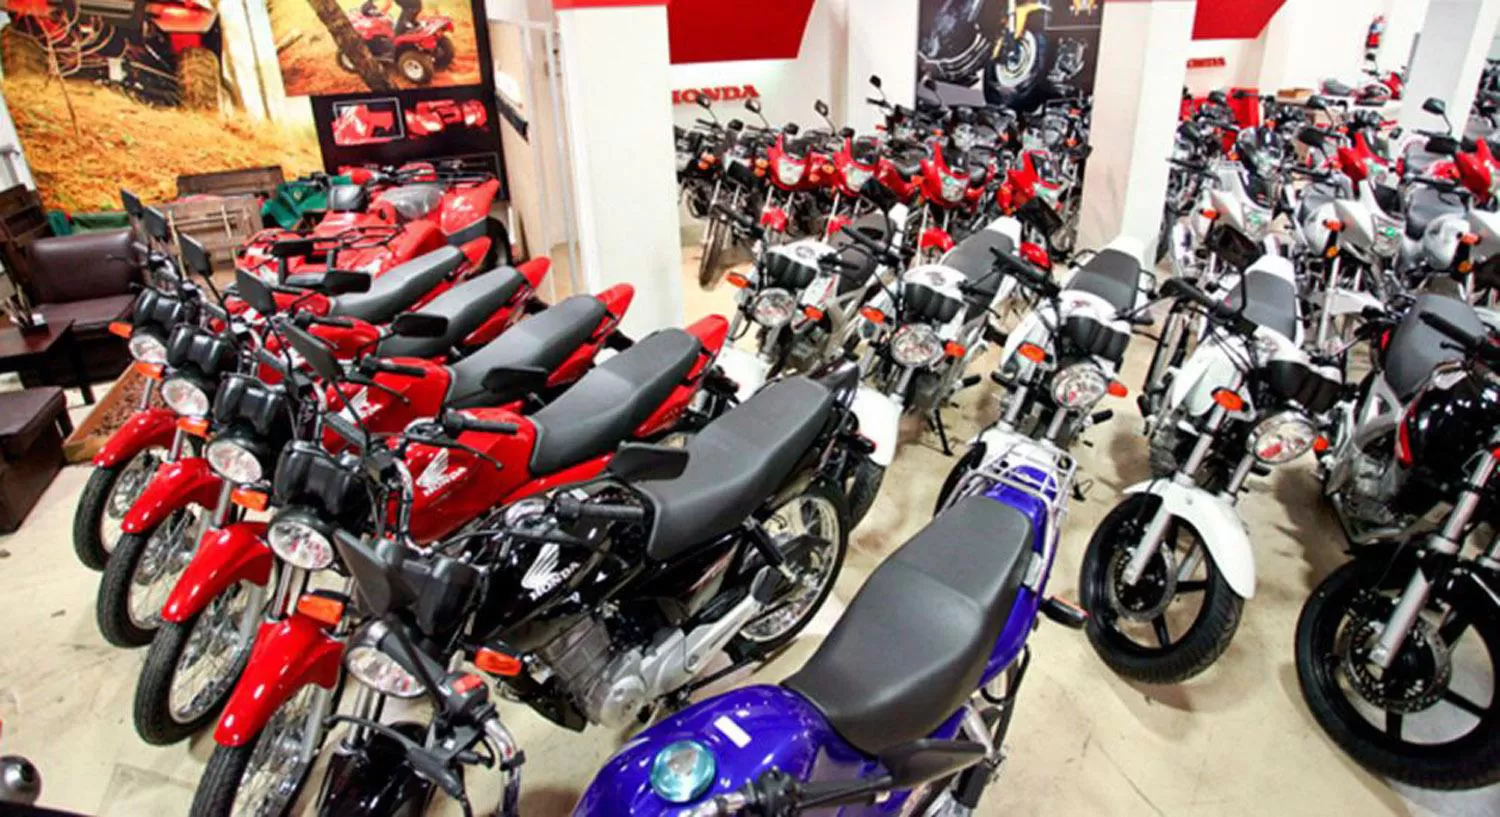 La venta de motos creció un 35% en julio por las medidas de incentivo, según los concesionarios